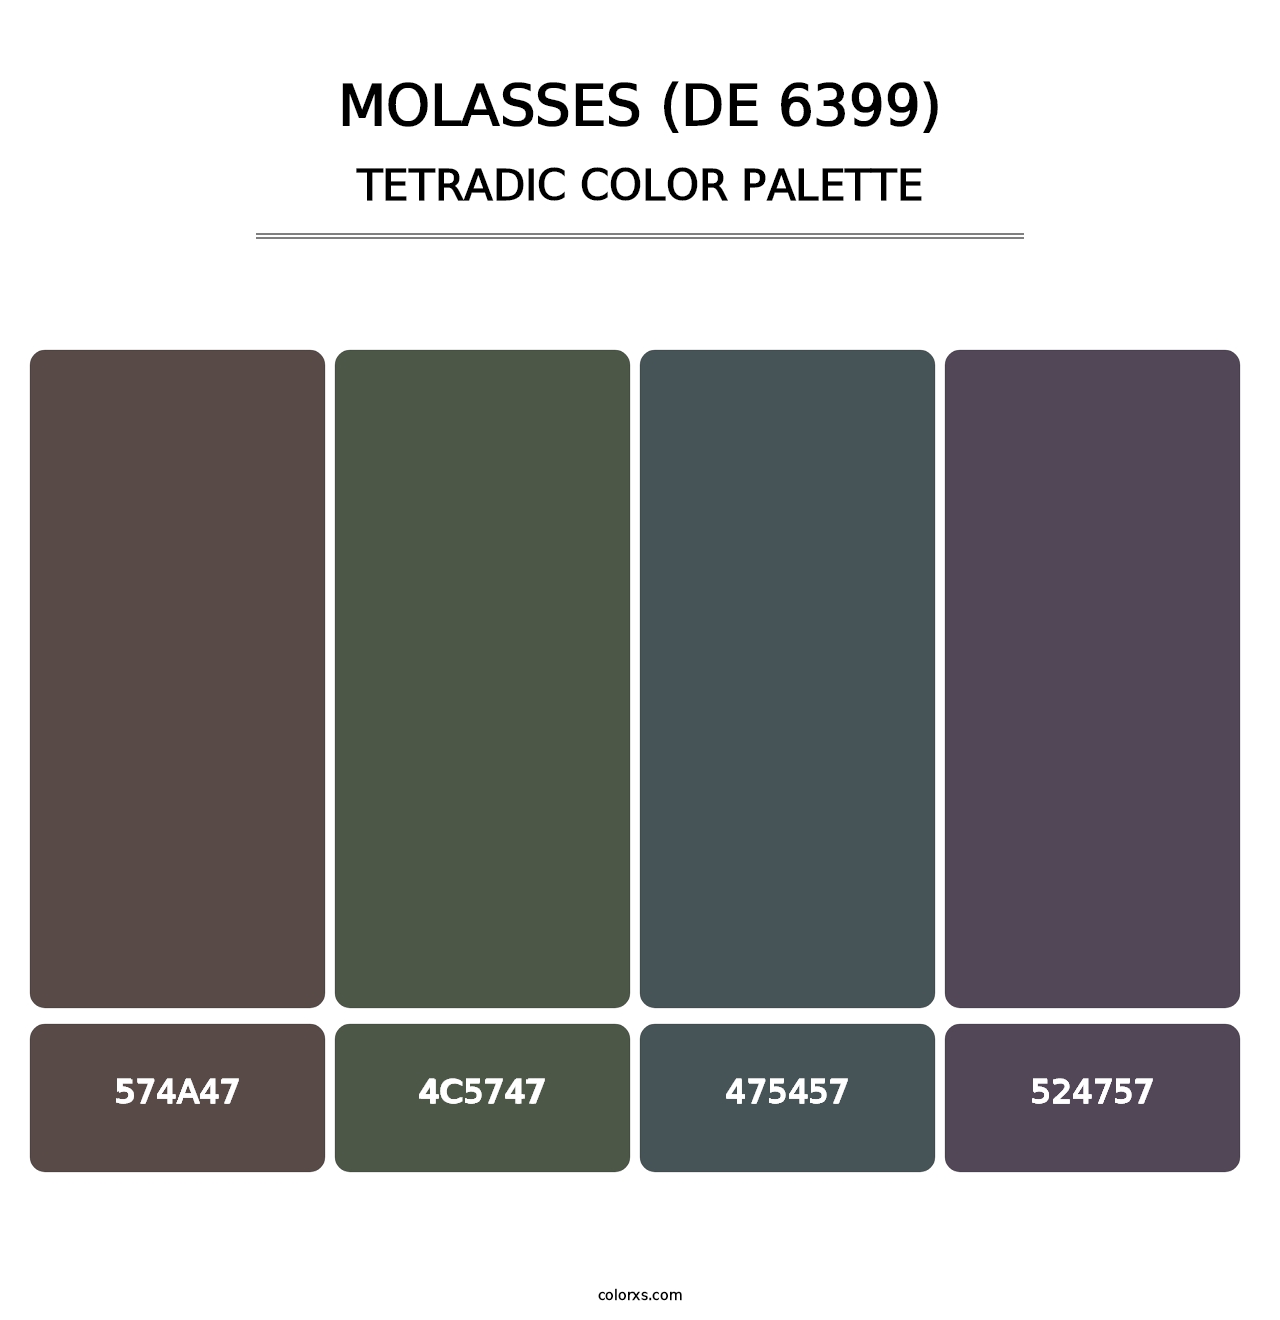 Molasses (DE 6399) - Tetradic Color Palette